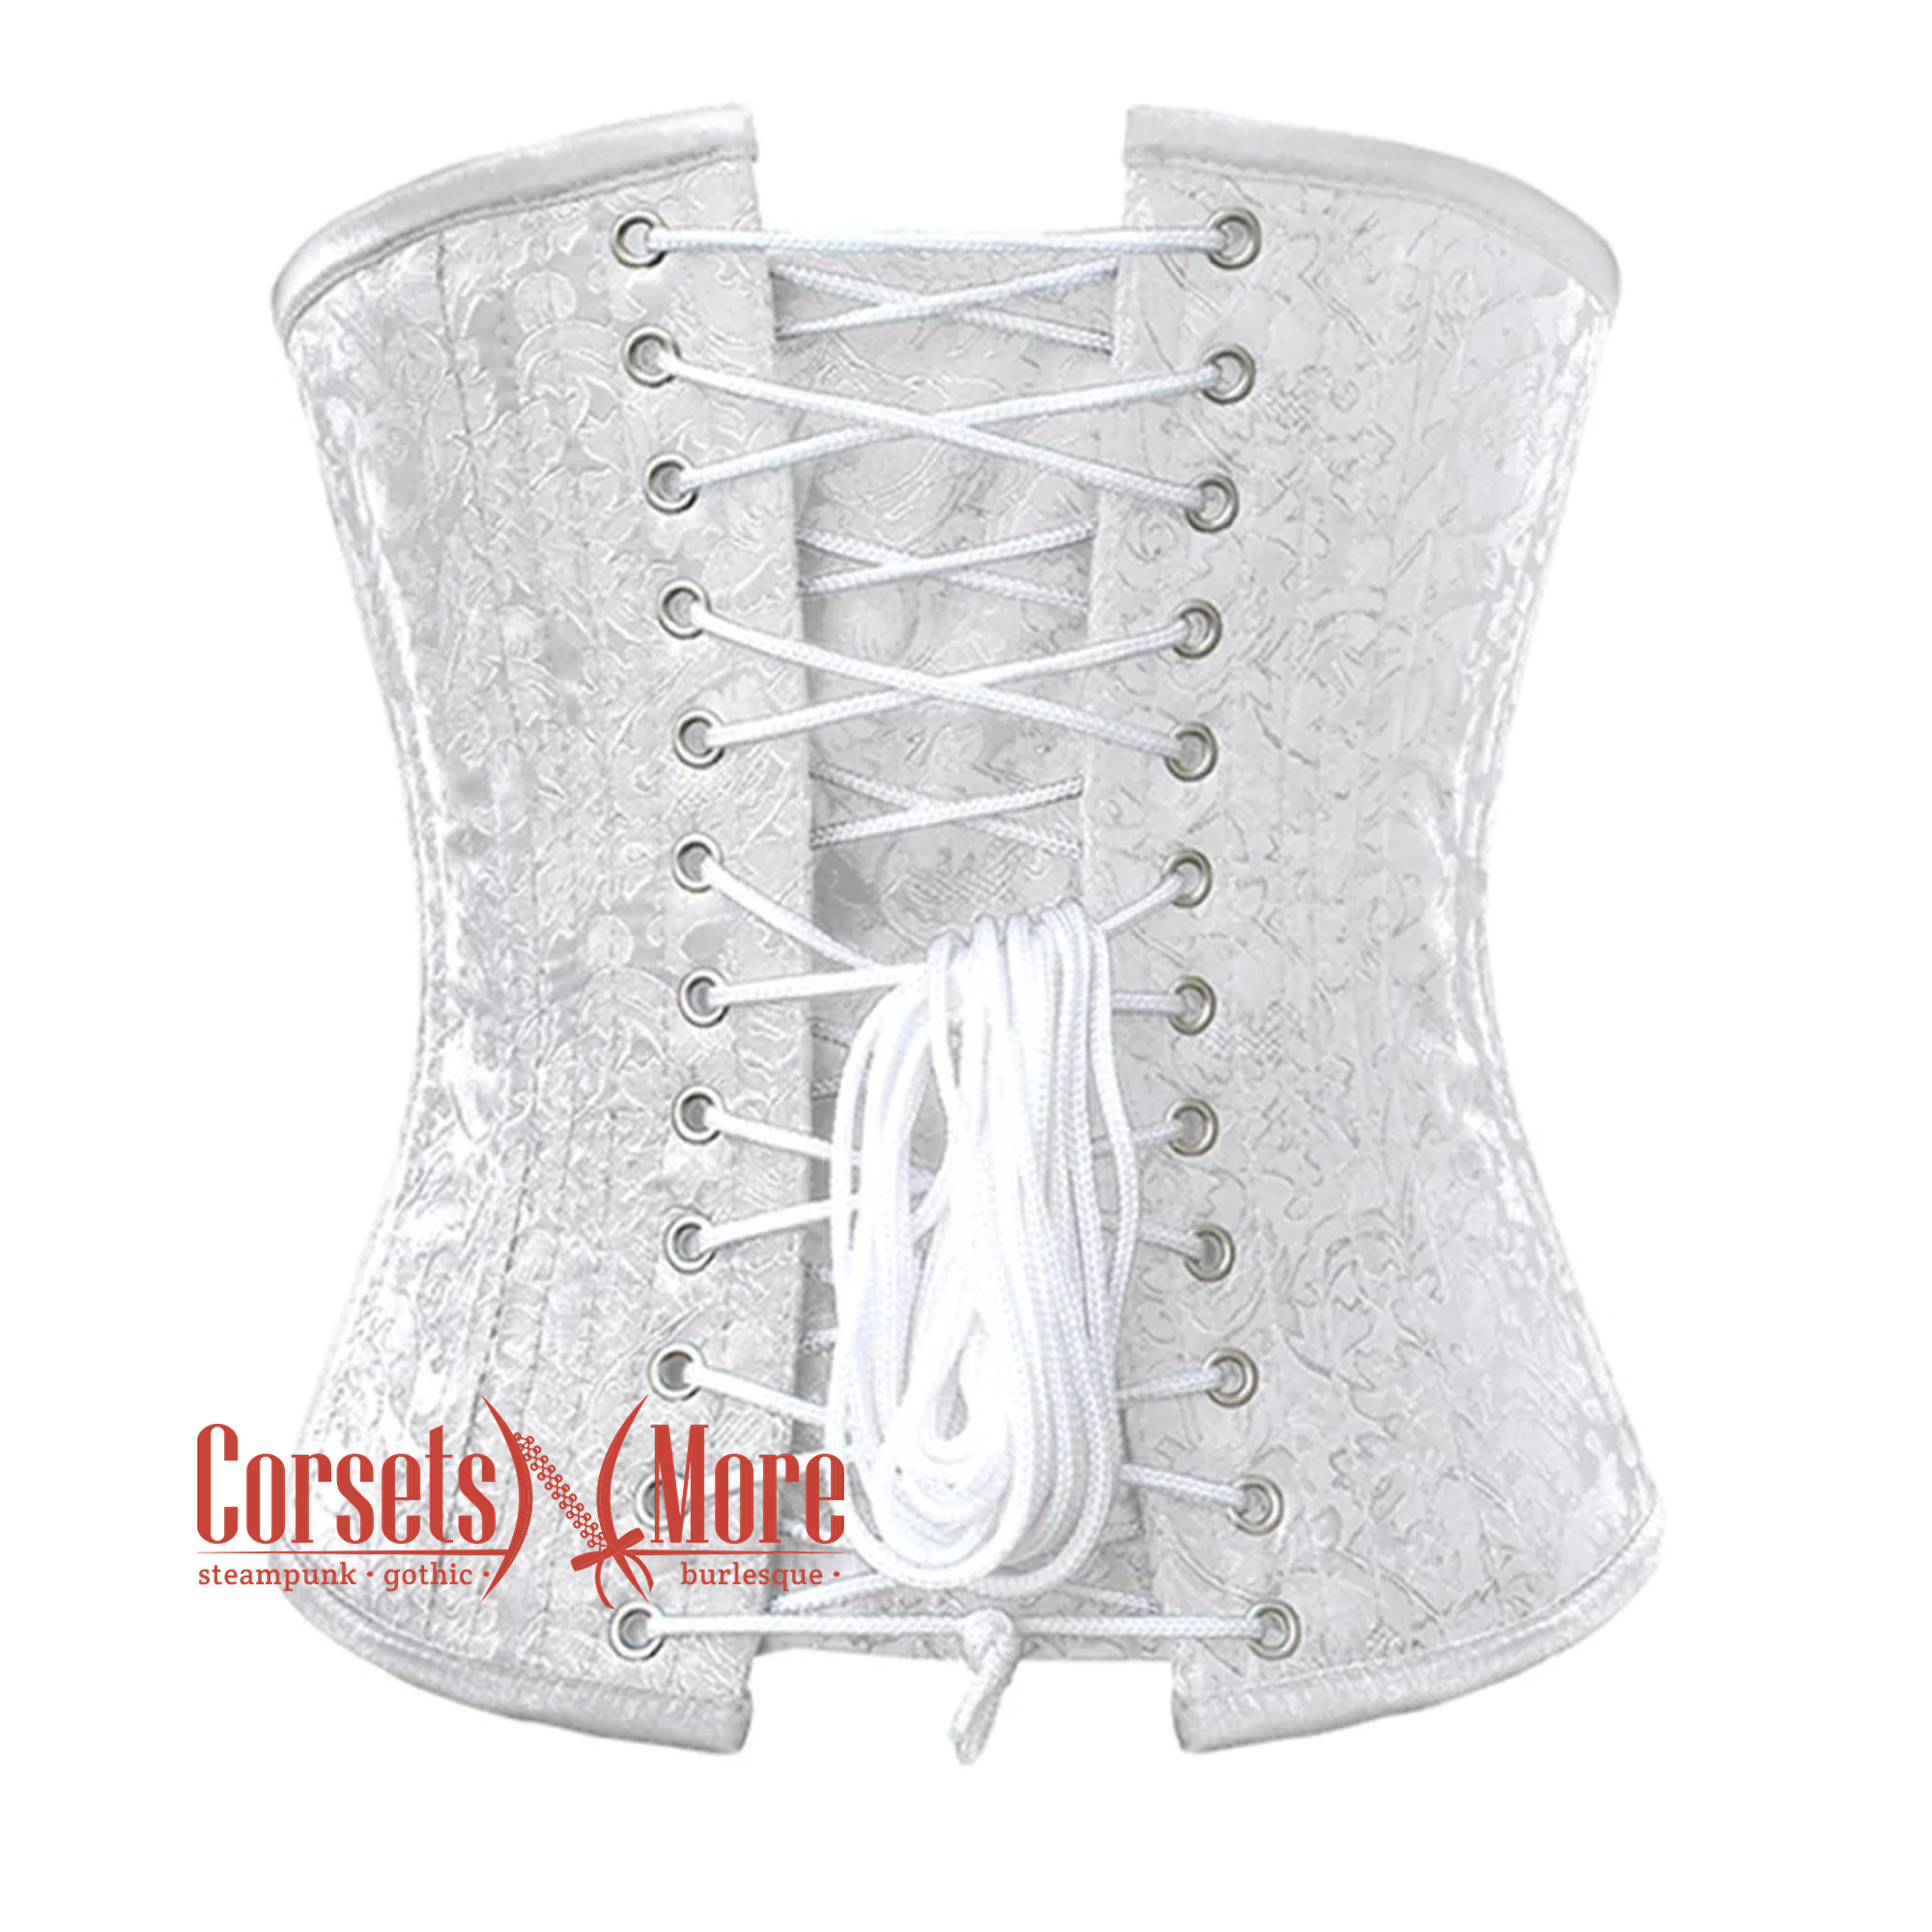 MR corset】エンジェルウィング オーバーコルセット XS/エムアール 【SALE】 